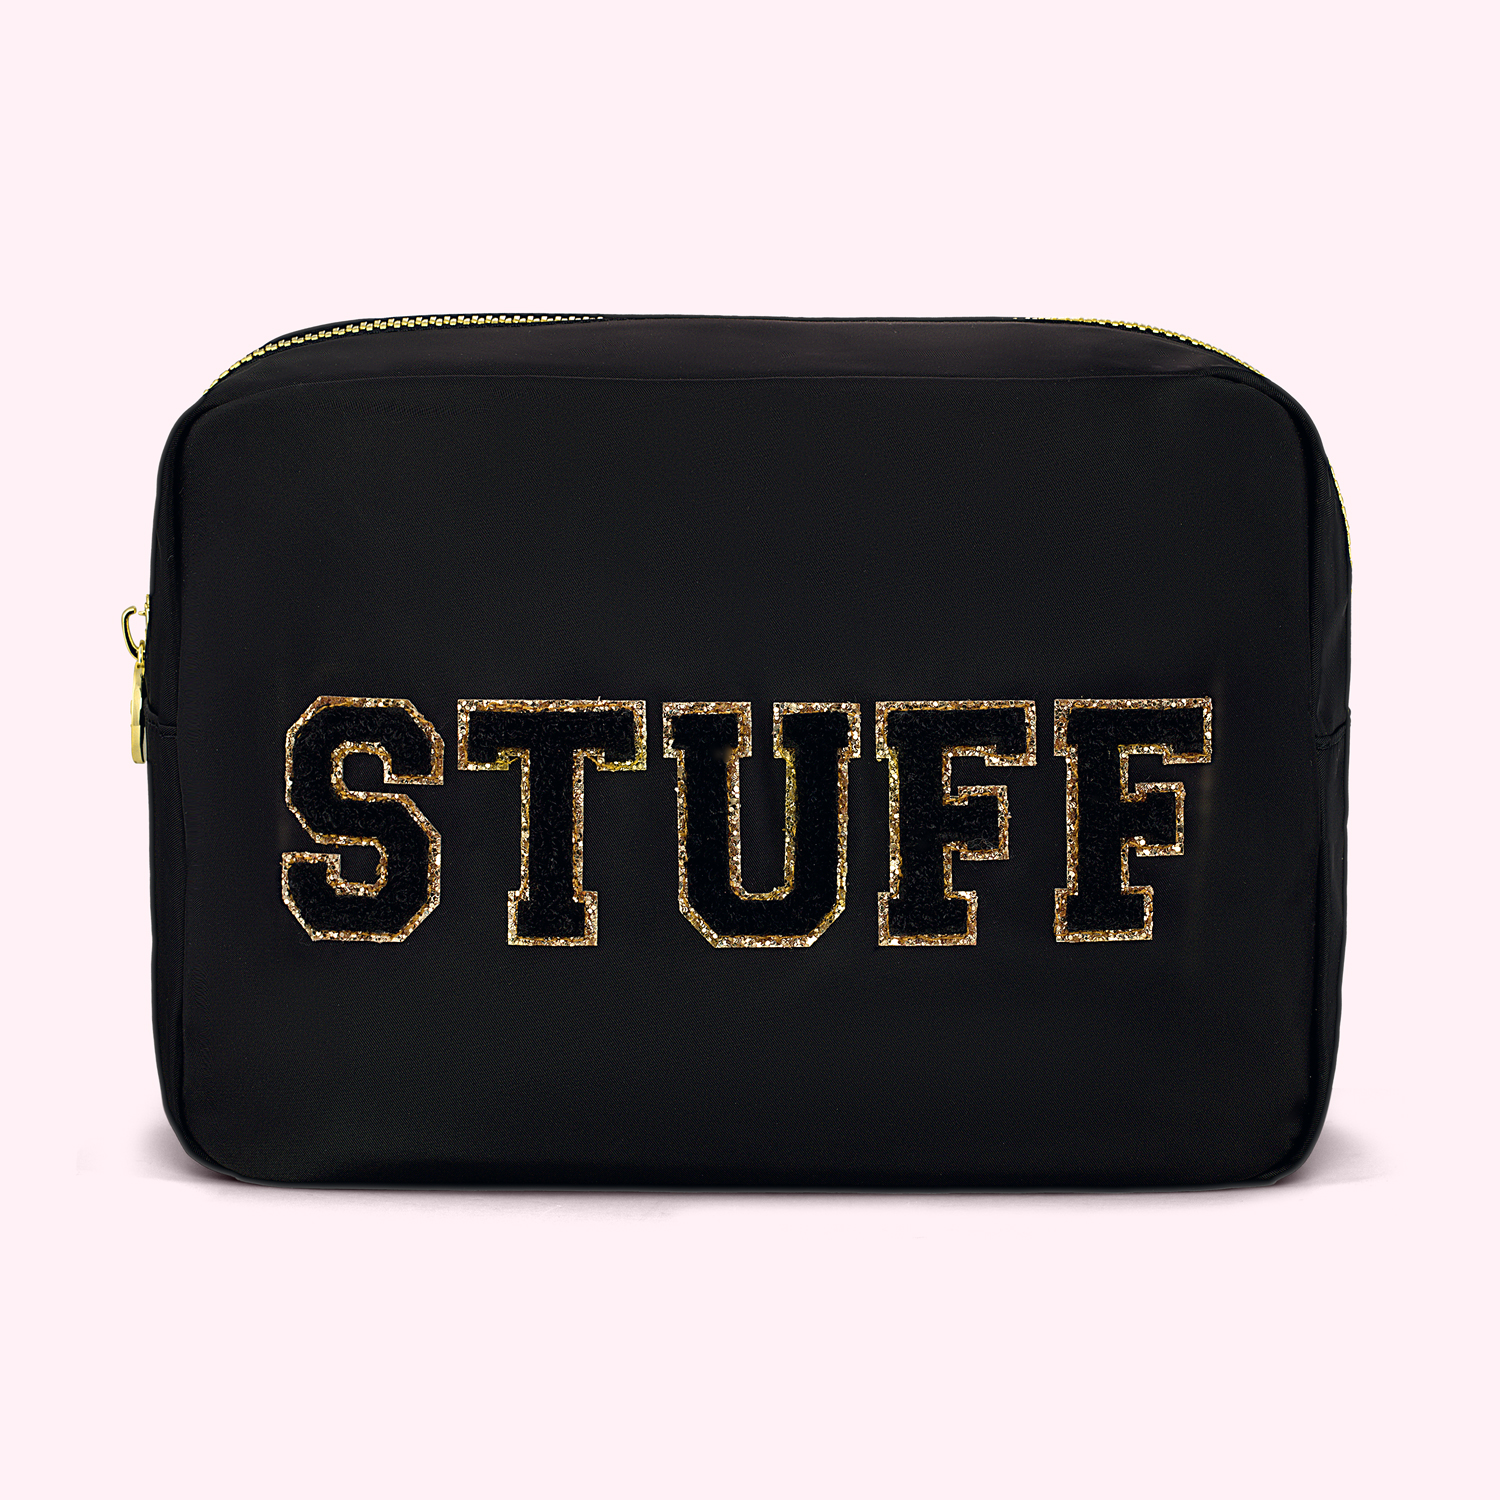 Stuff-It Stuff Sacks – Wolfman Luggage